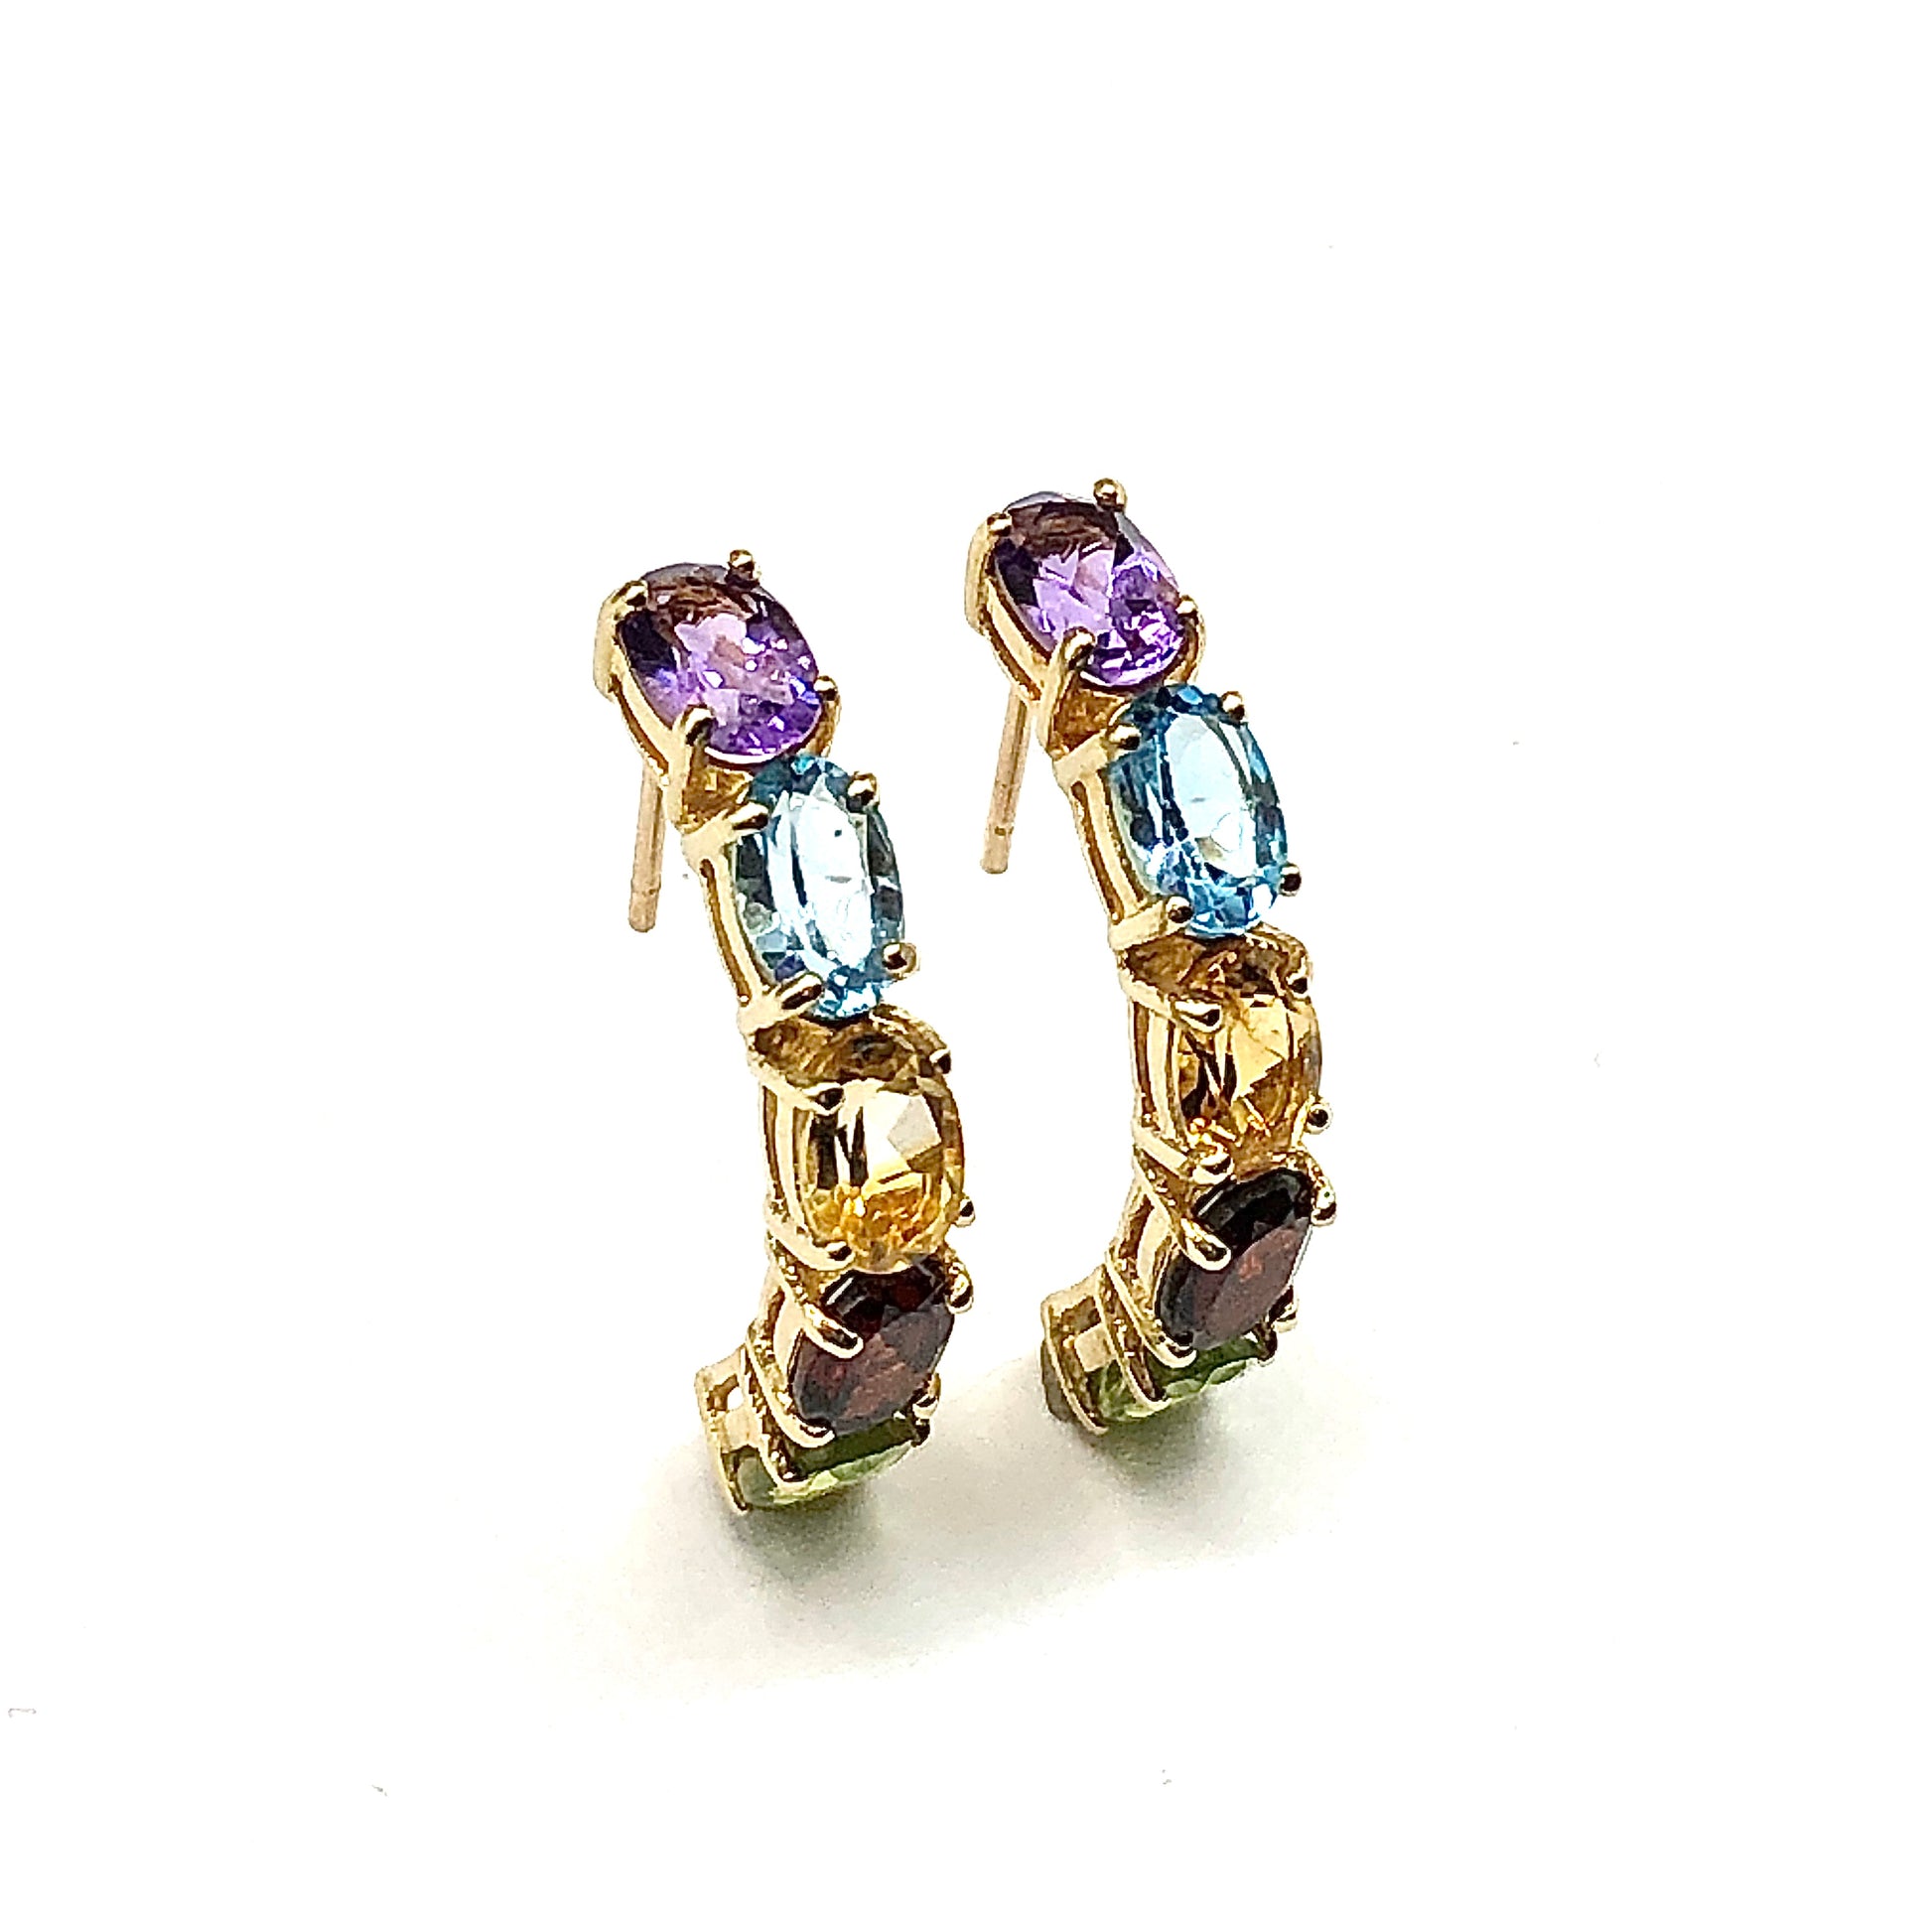 Hoop Earrings - 10k Gold Half Hoop Earrings - Tennis Bracelet Hoop Semi-Precious Stone Earrings